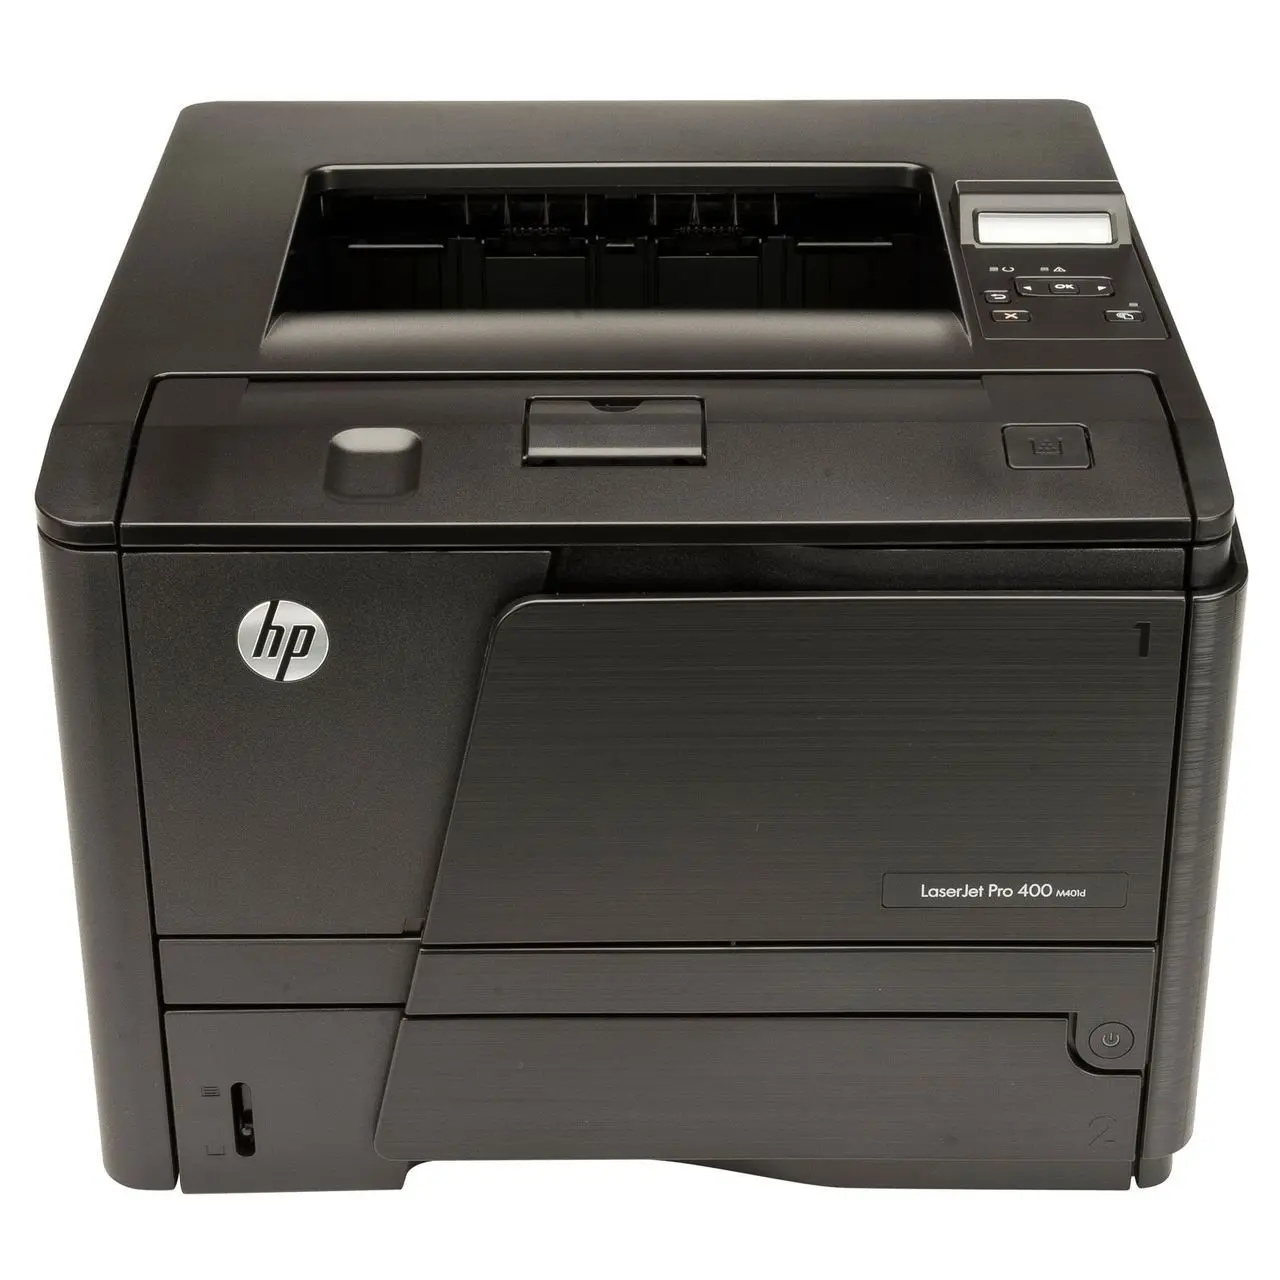 hewlett packard 400 m401dn laserjet pro printer reviews - How fast is HP LaserJet 400 M401dn